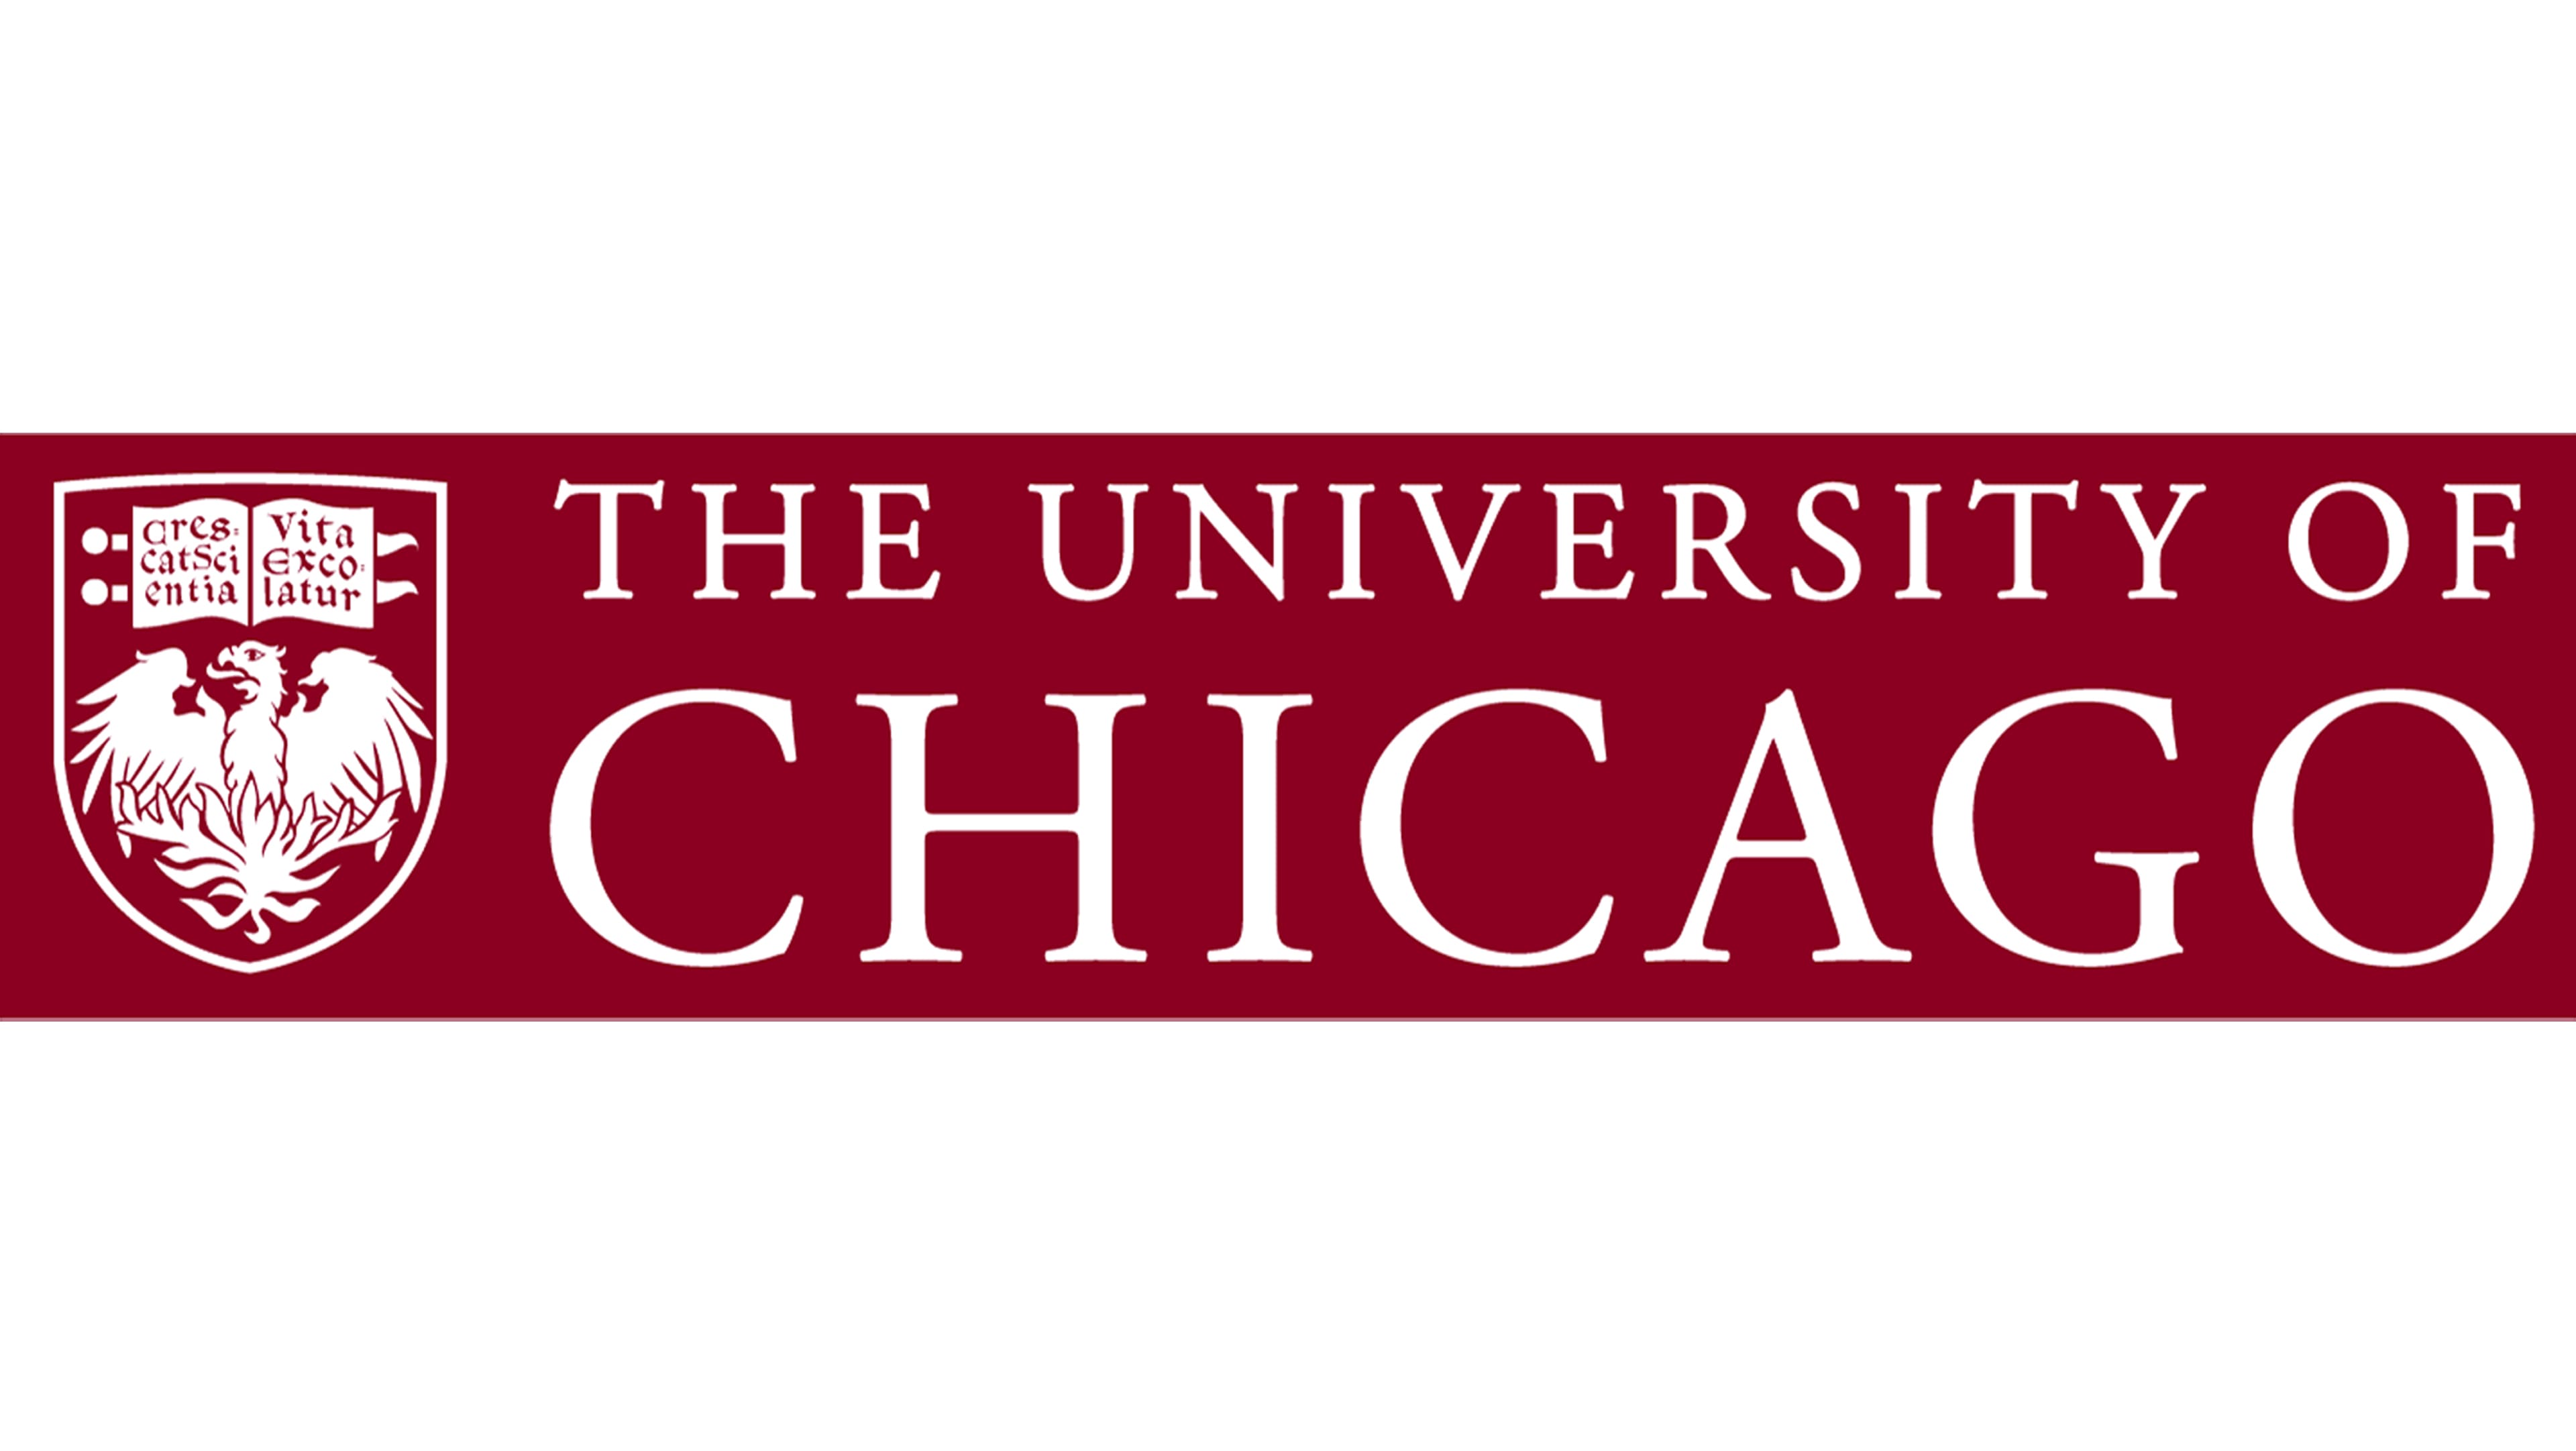 शिकागो विश्वविद्यालय का लोगो और प्रतीक, अर्थ, इतिहास, पीएनजी, ब्रांड